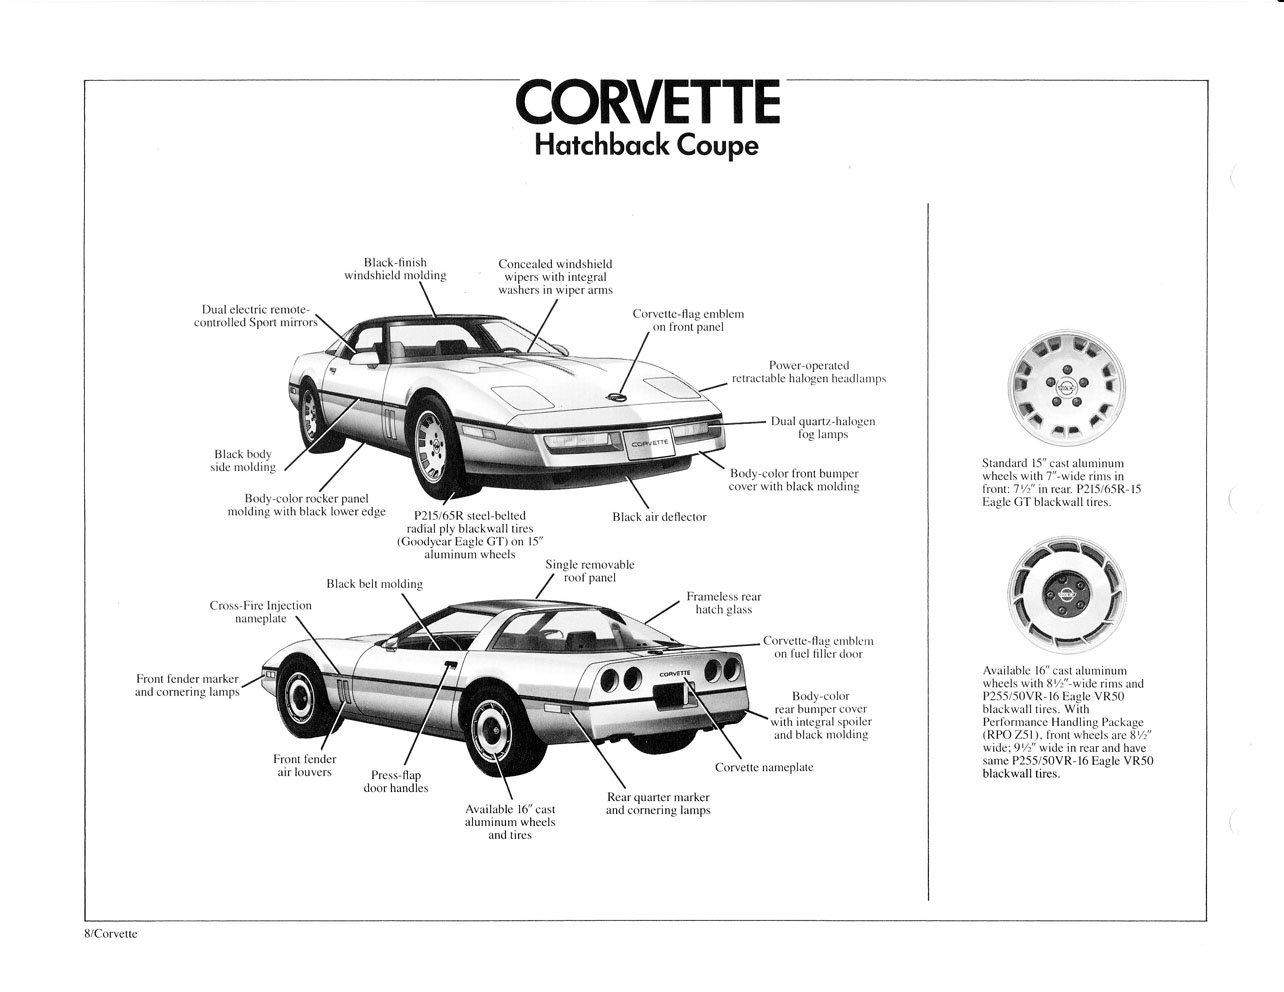 1984_Corvette_Dealer_Sales_Album-08